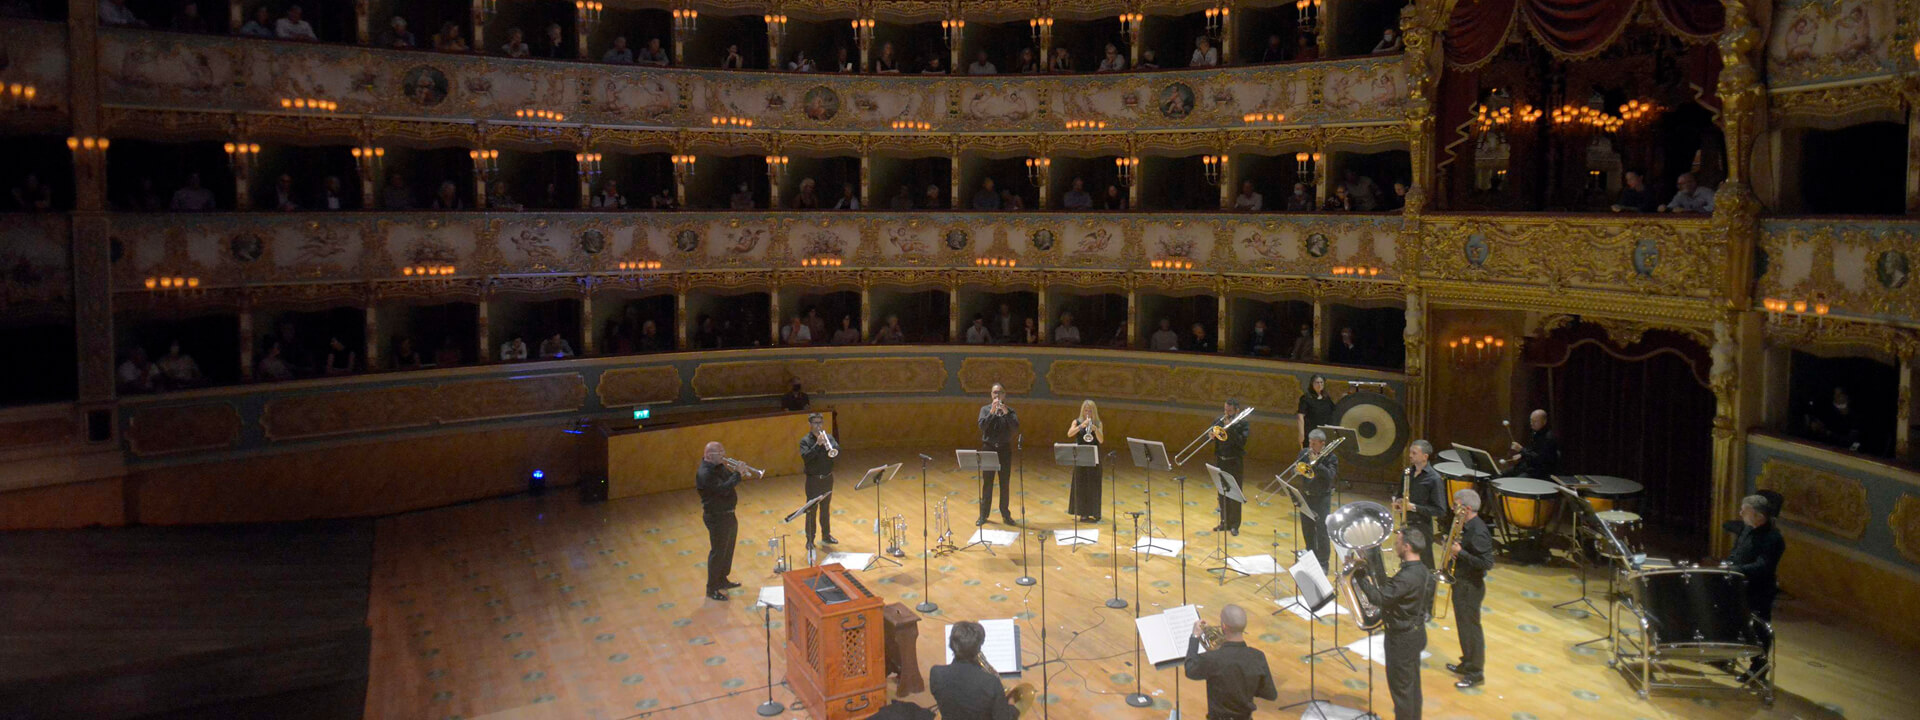 La Fenice Orchestra